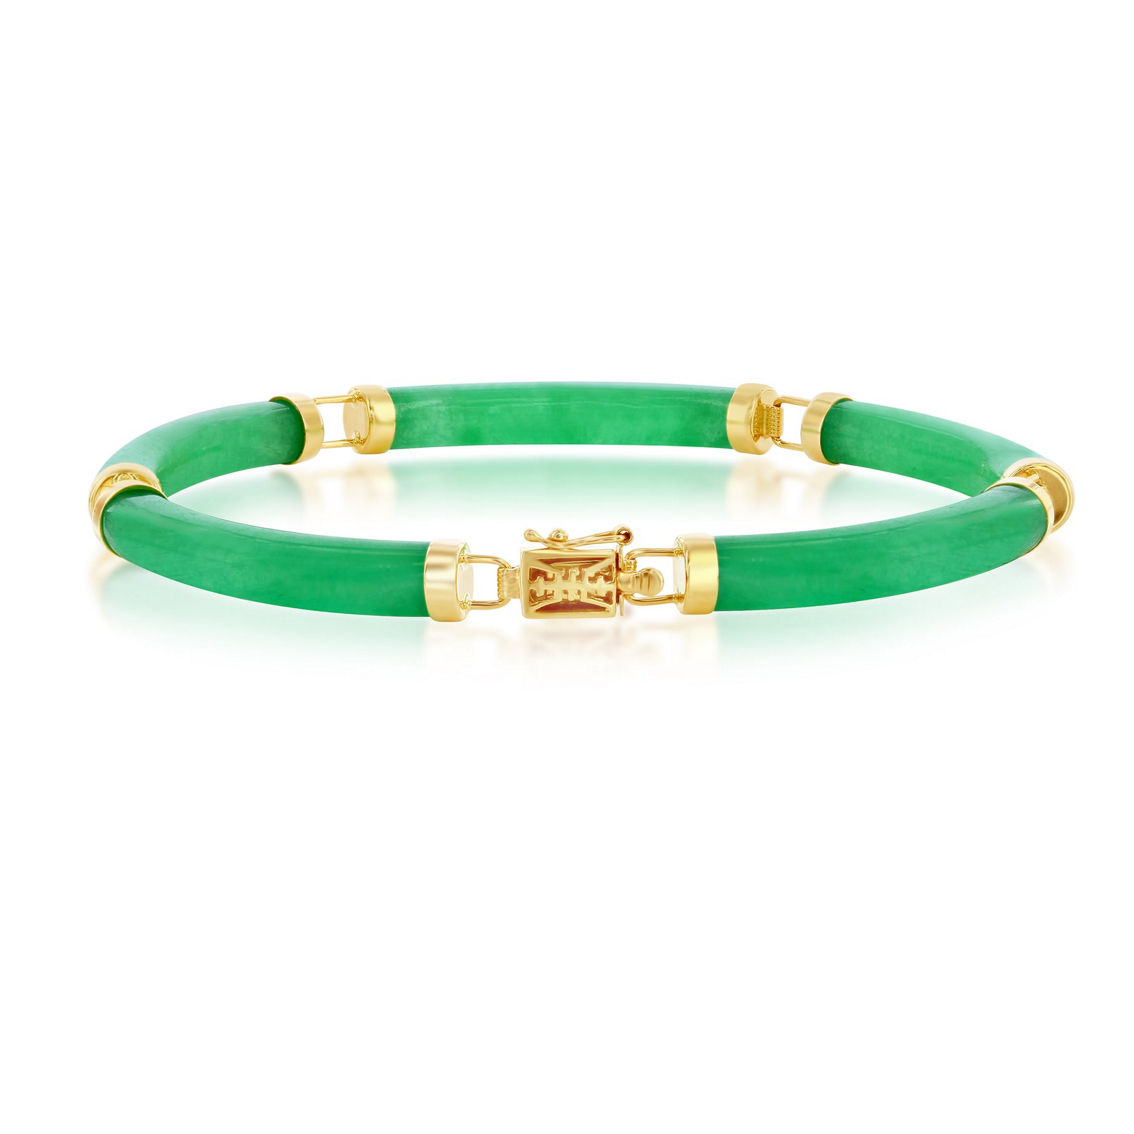 Bellissima 14K Yellow Gold, Genuine Green Jade Curved Bar Link Bracelet - Image 2 of 3